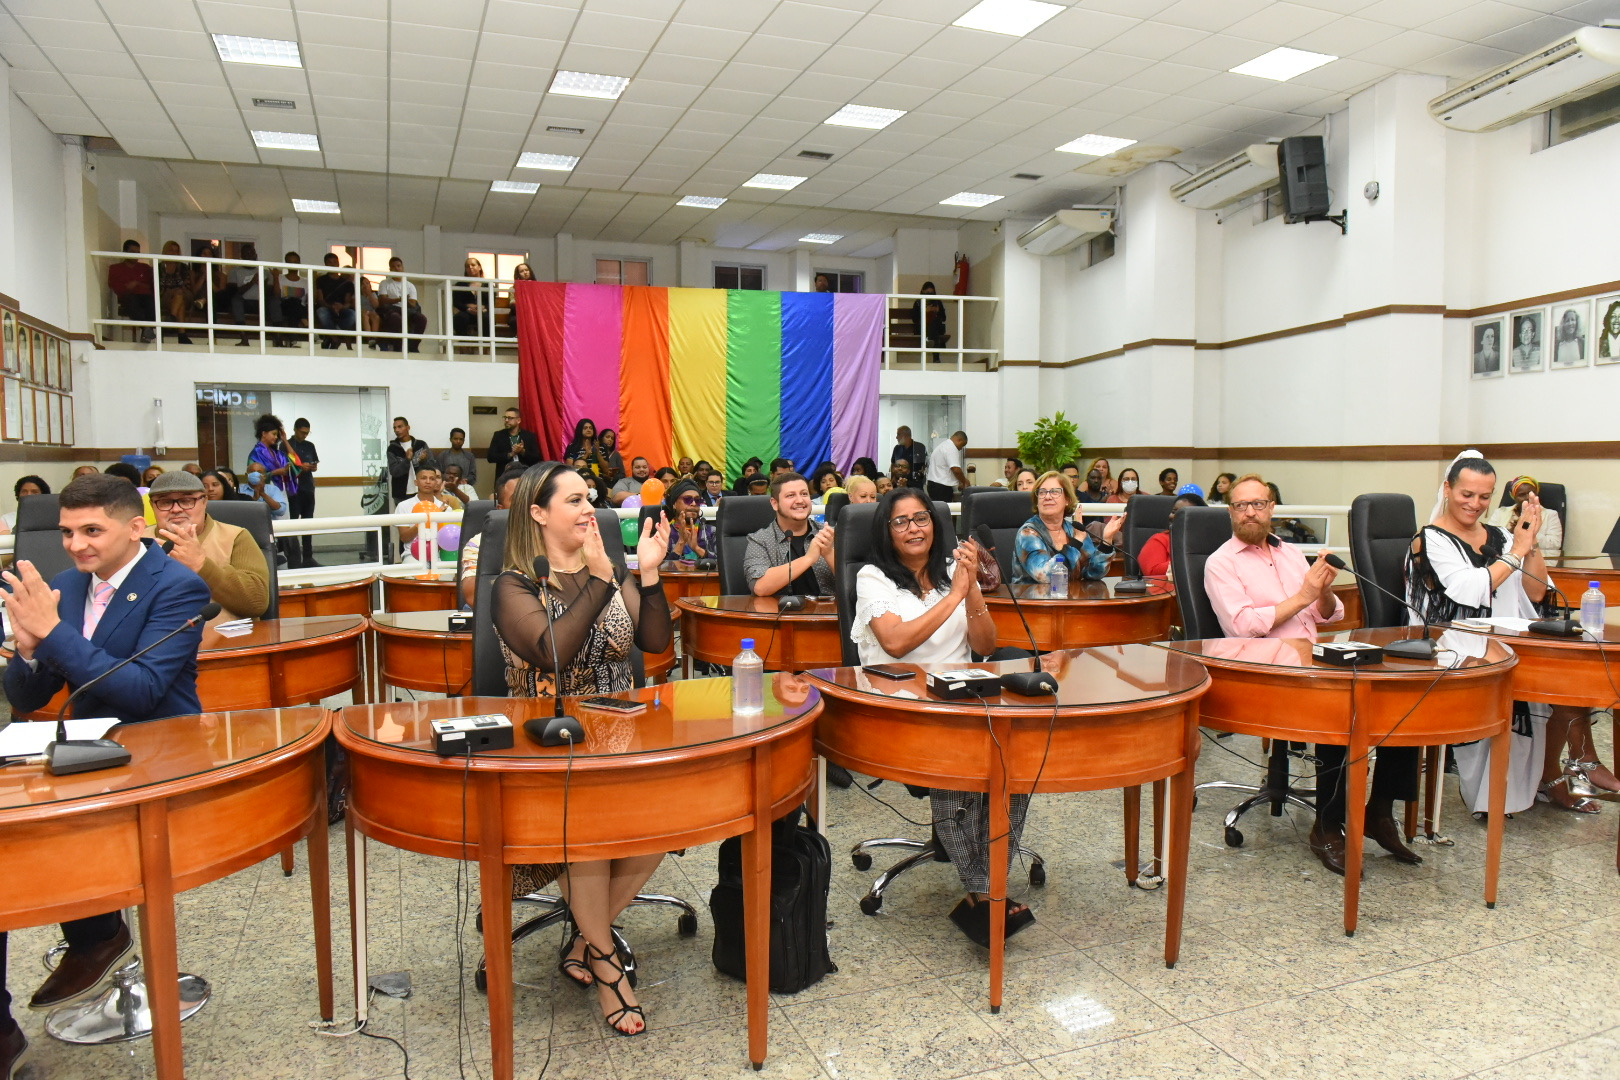 Câmara de Nova Iguaçu celebra o Dia Internacional do Orgulho LGBTQUIAPN+